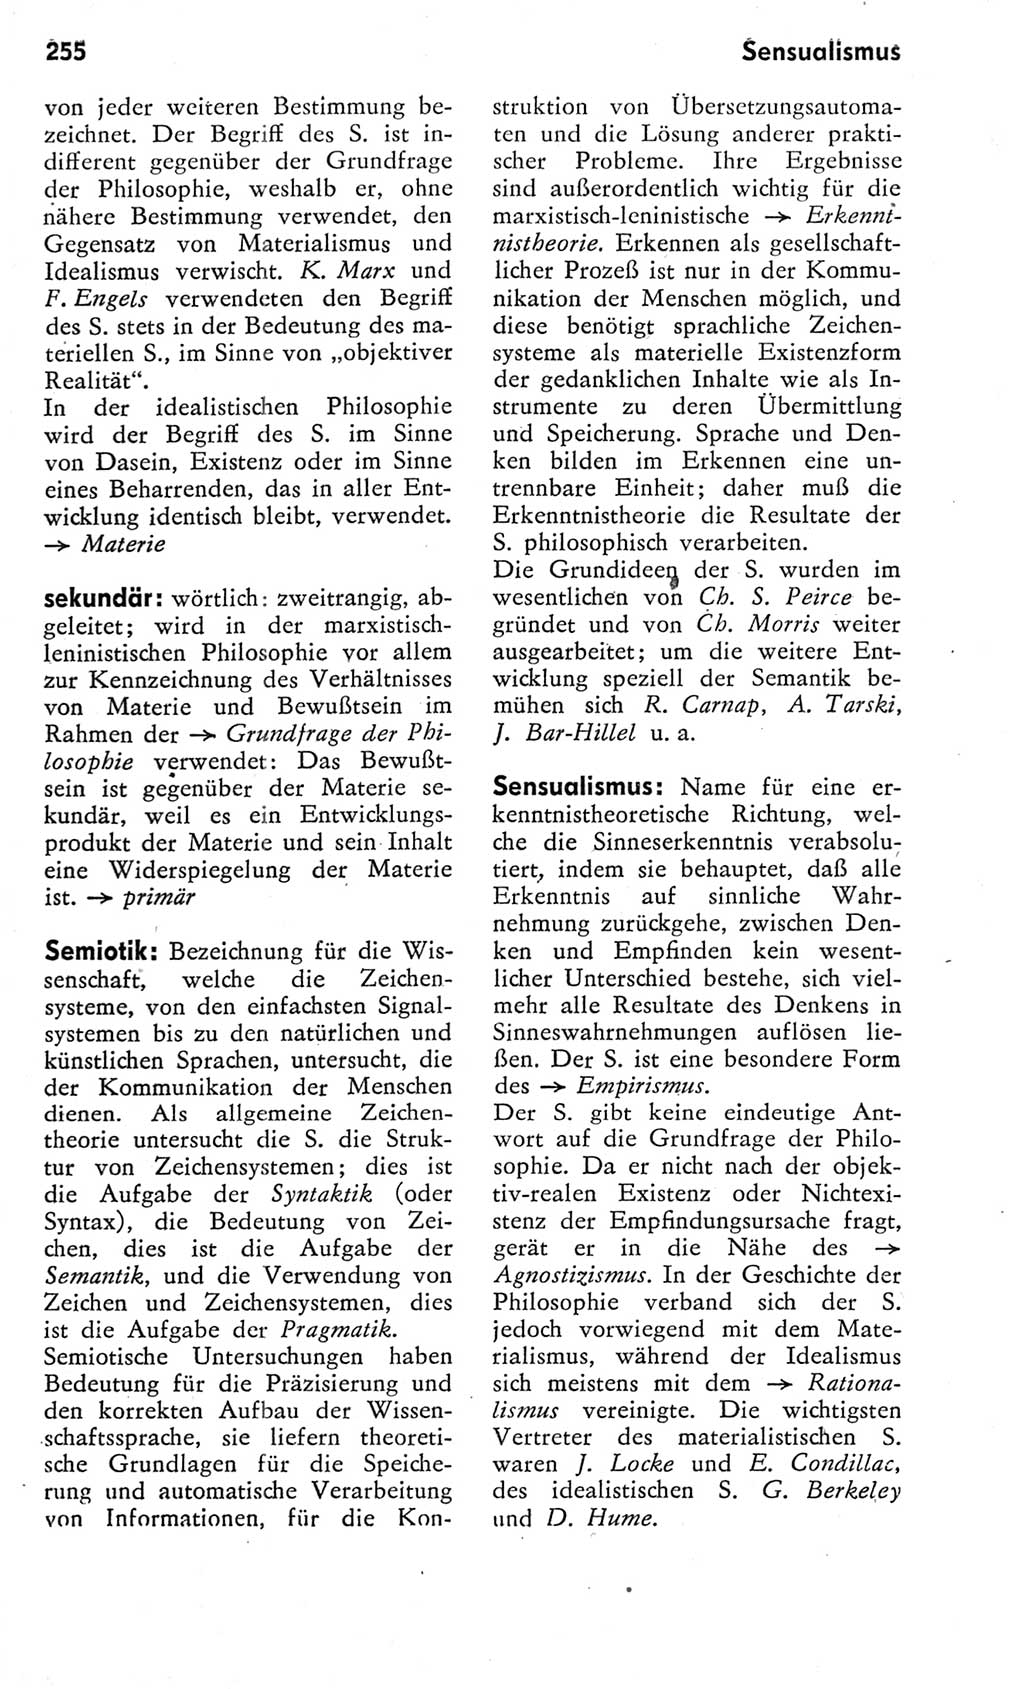 Kleines Wörterbuch der marxistisch-leninistischen Philosophie [Deutsche Demokratische Republik (DDR)] 1975, Seite 255 (Kl. Wb. ML Phil. DDR 1975, S. 255)